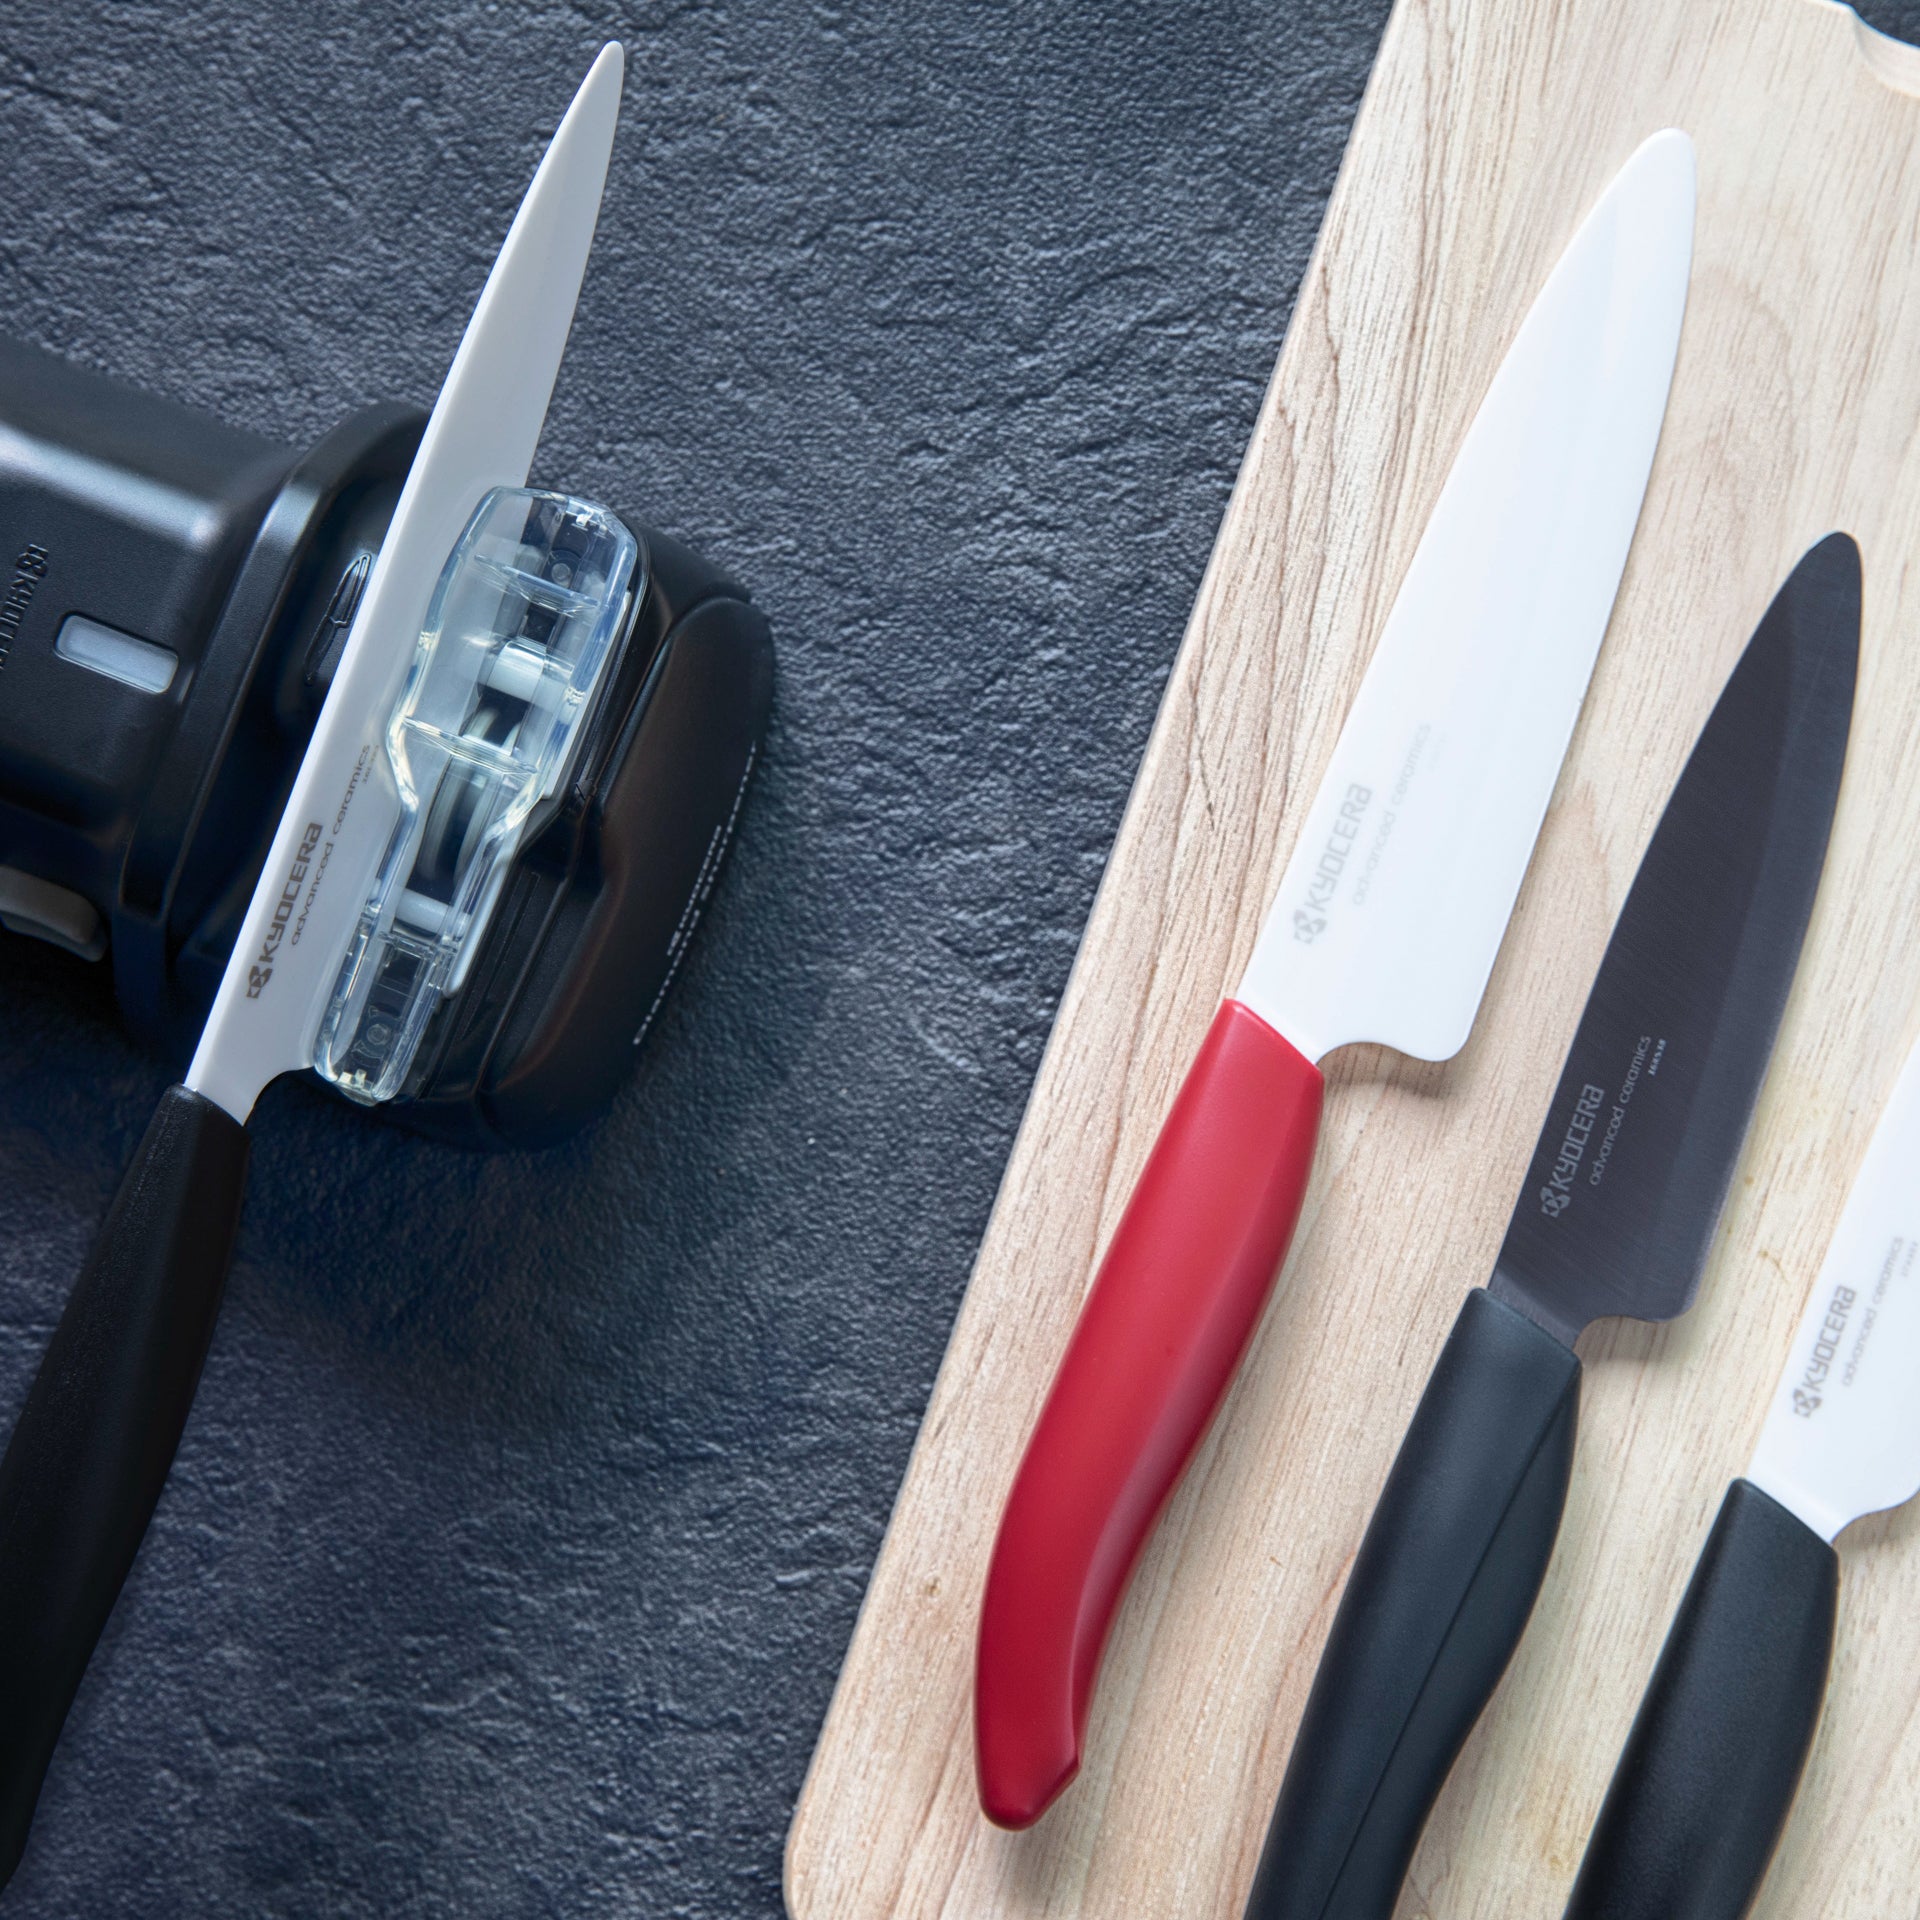 Electric knife sharpener Kyocera for ceramic knives DS-50 EXP for sale